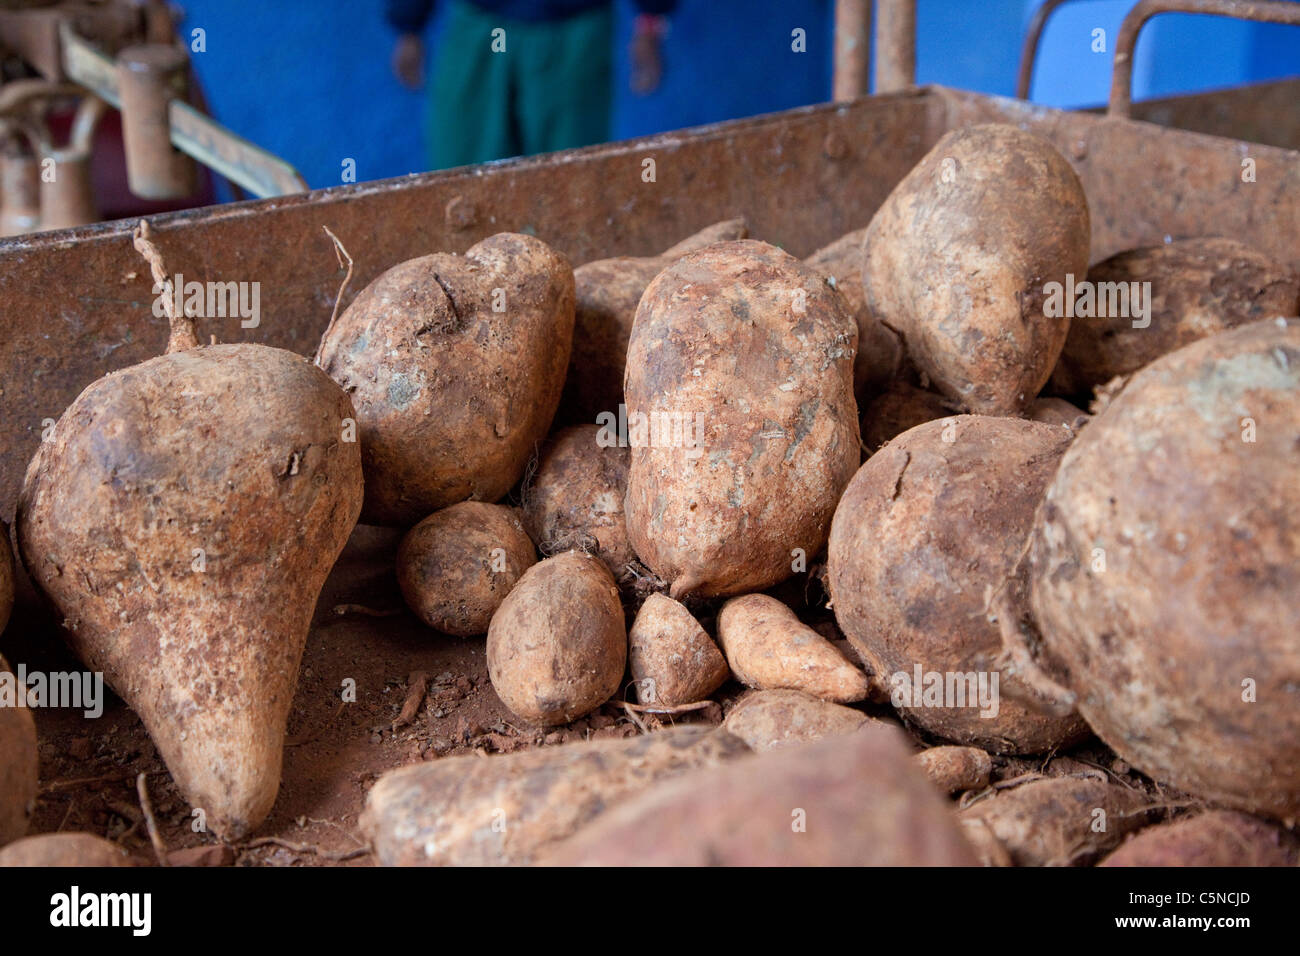 Cuba, Havana. Boniato Root, a Variety of Sweet Potato. Stock Photo